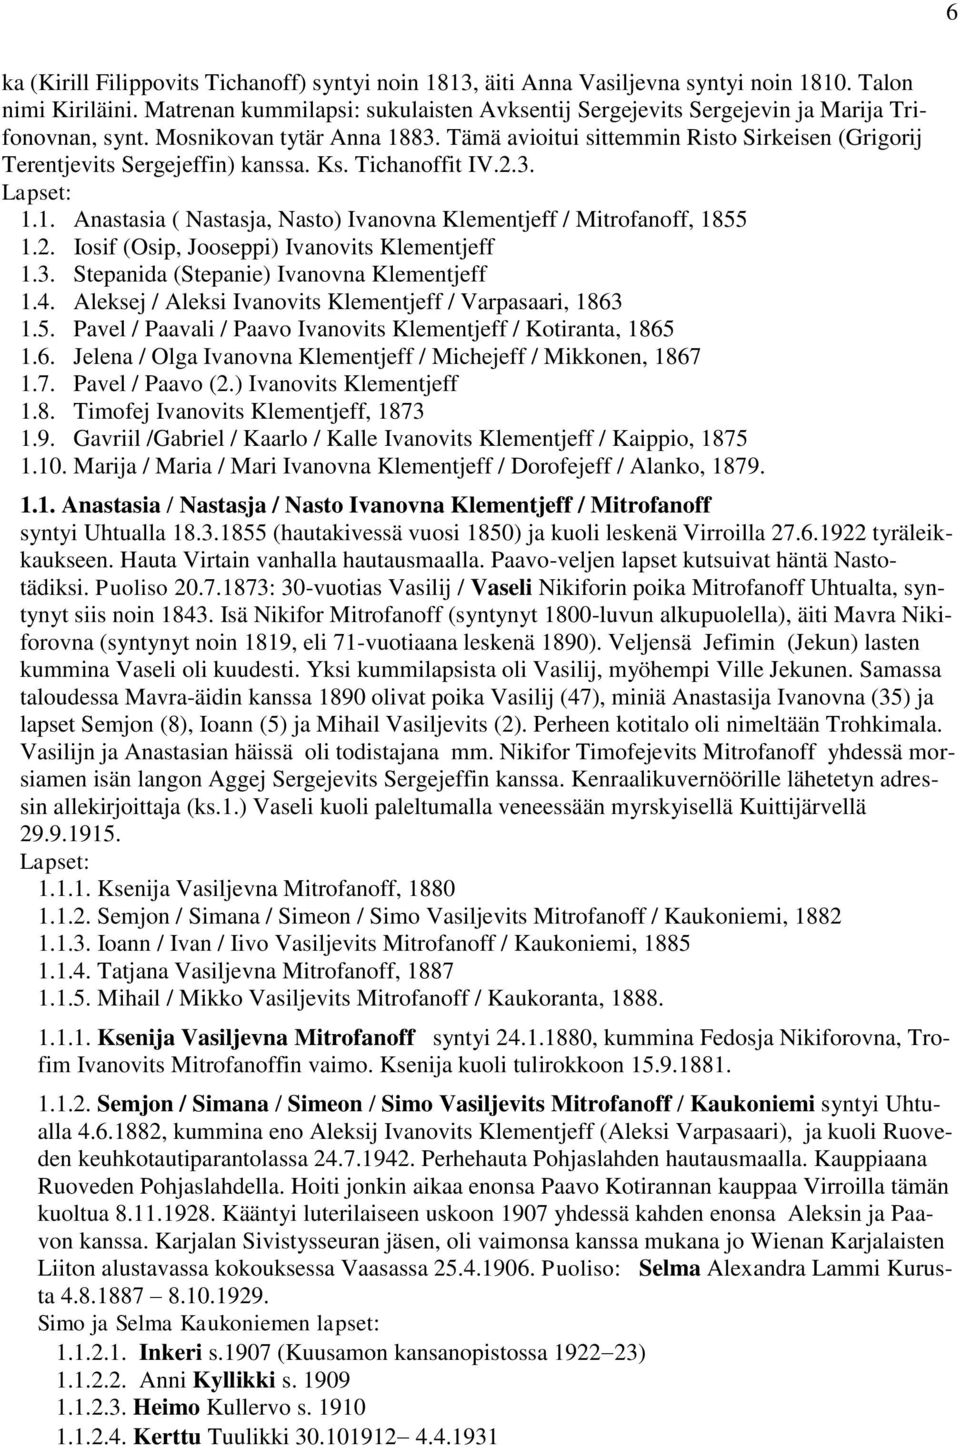 Tämä avioitui sittemmin Risto Sirkeisen (Grigorij Terentjevits Sergejeffin) kanssa. Ks. Tichanoffit IV.2.3. 1.1. Anastasia ( Nastasja, Nasto) Ivanovna Klementjeff / Mitrofanoff, 1855 1.2. Iosif (Osip, Jooseppi) Ivanovits Klementjeff 1.